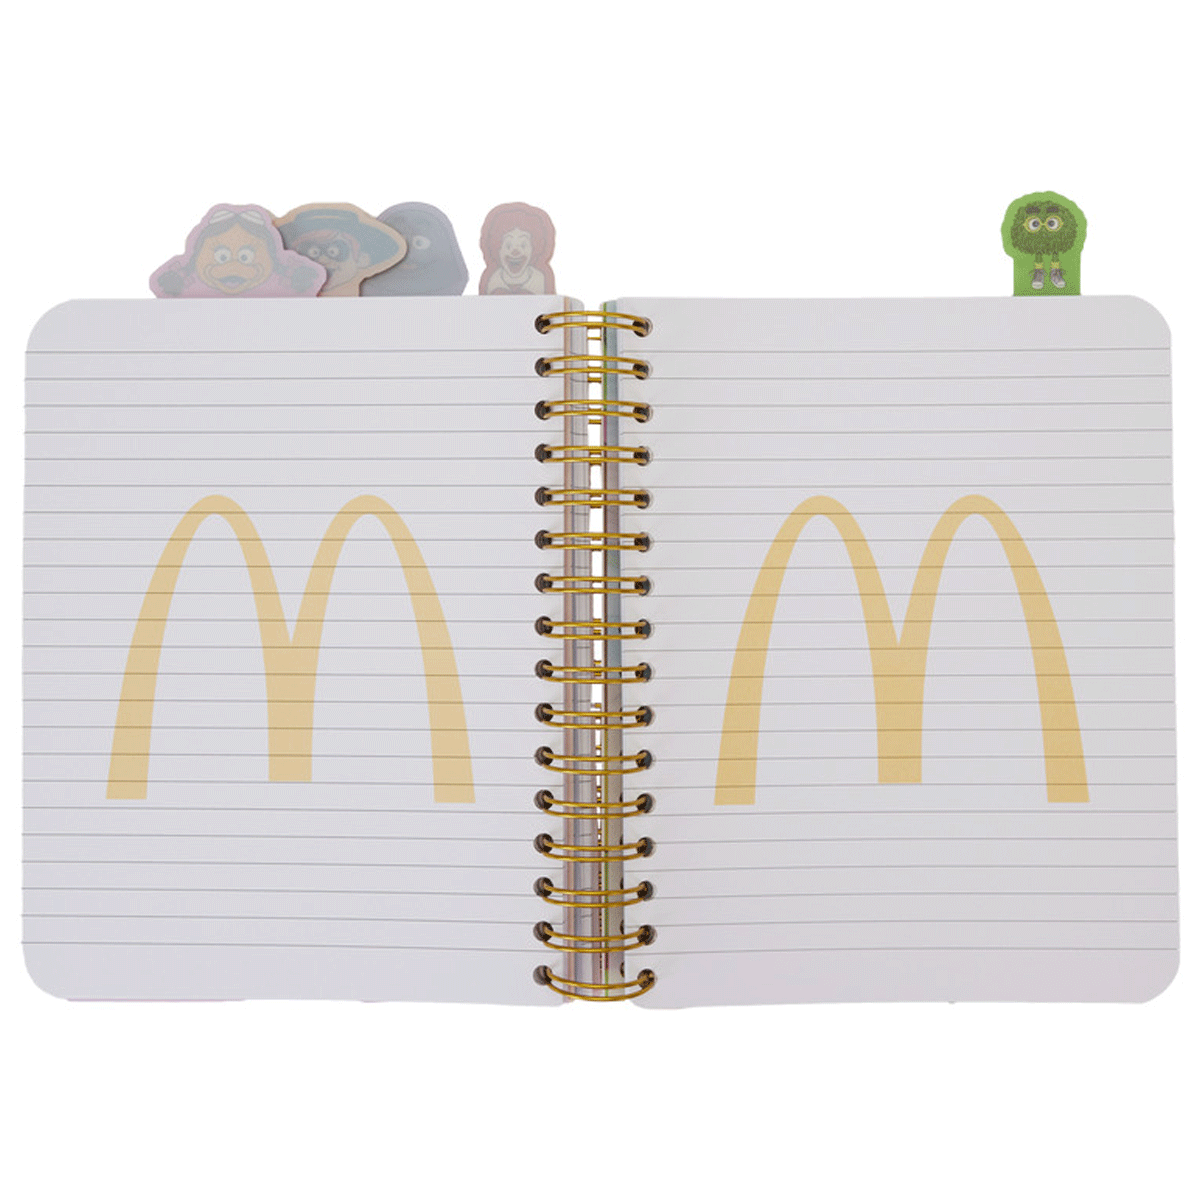 Loungefly x McDonalds Gang Tab Spiral Notebook Journal